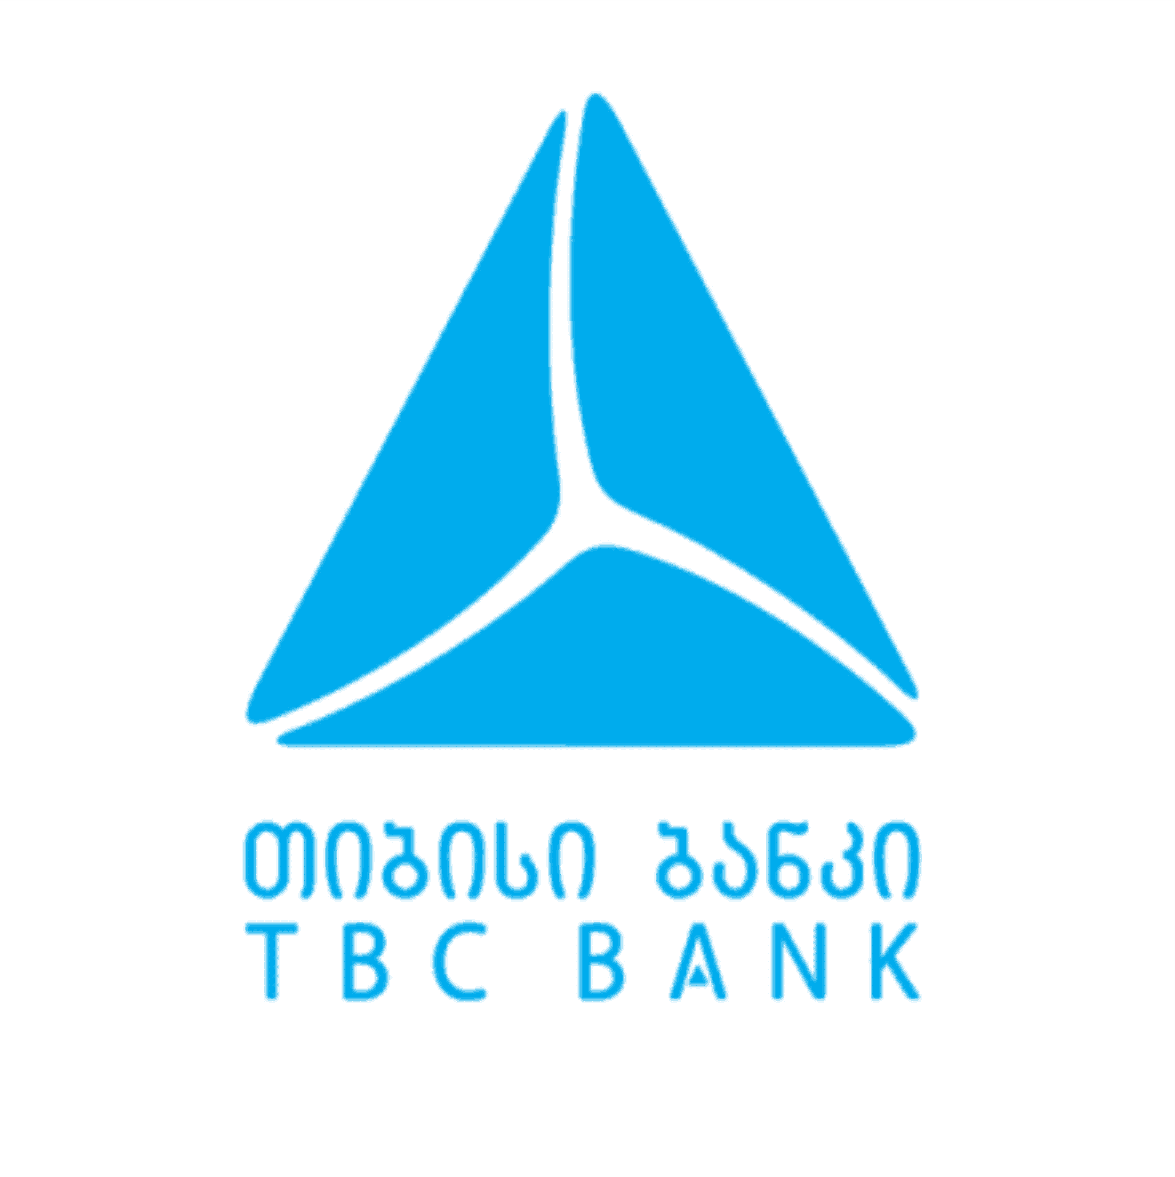 Tbc bank